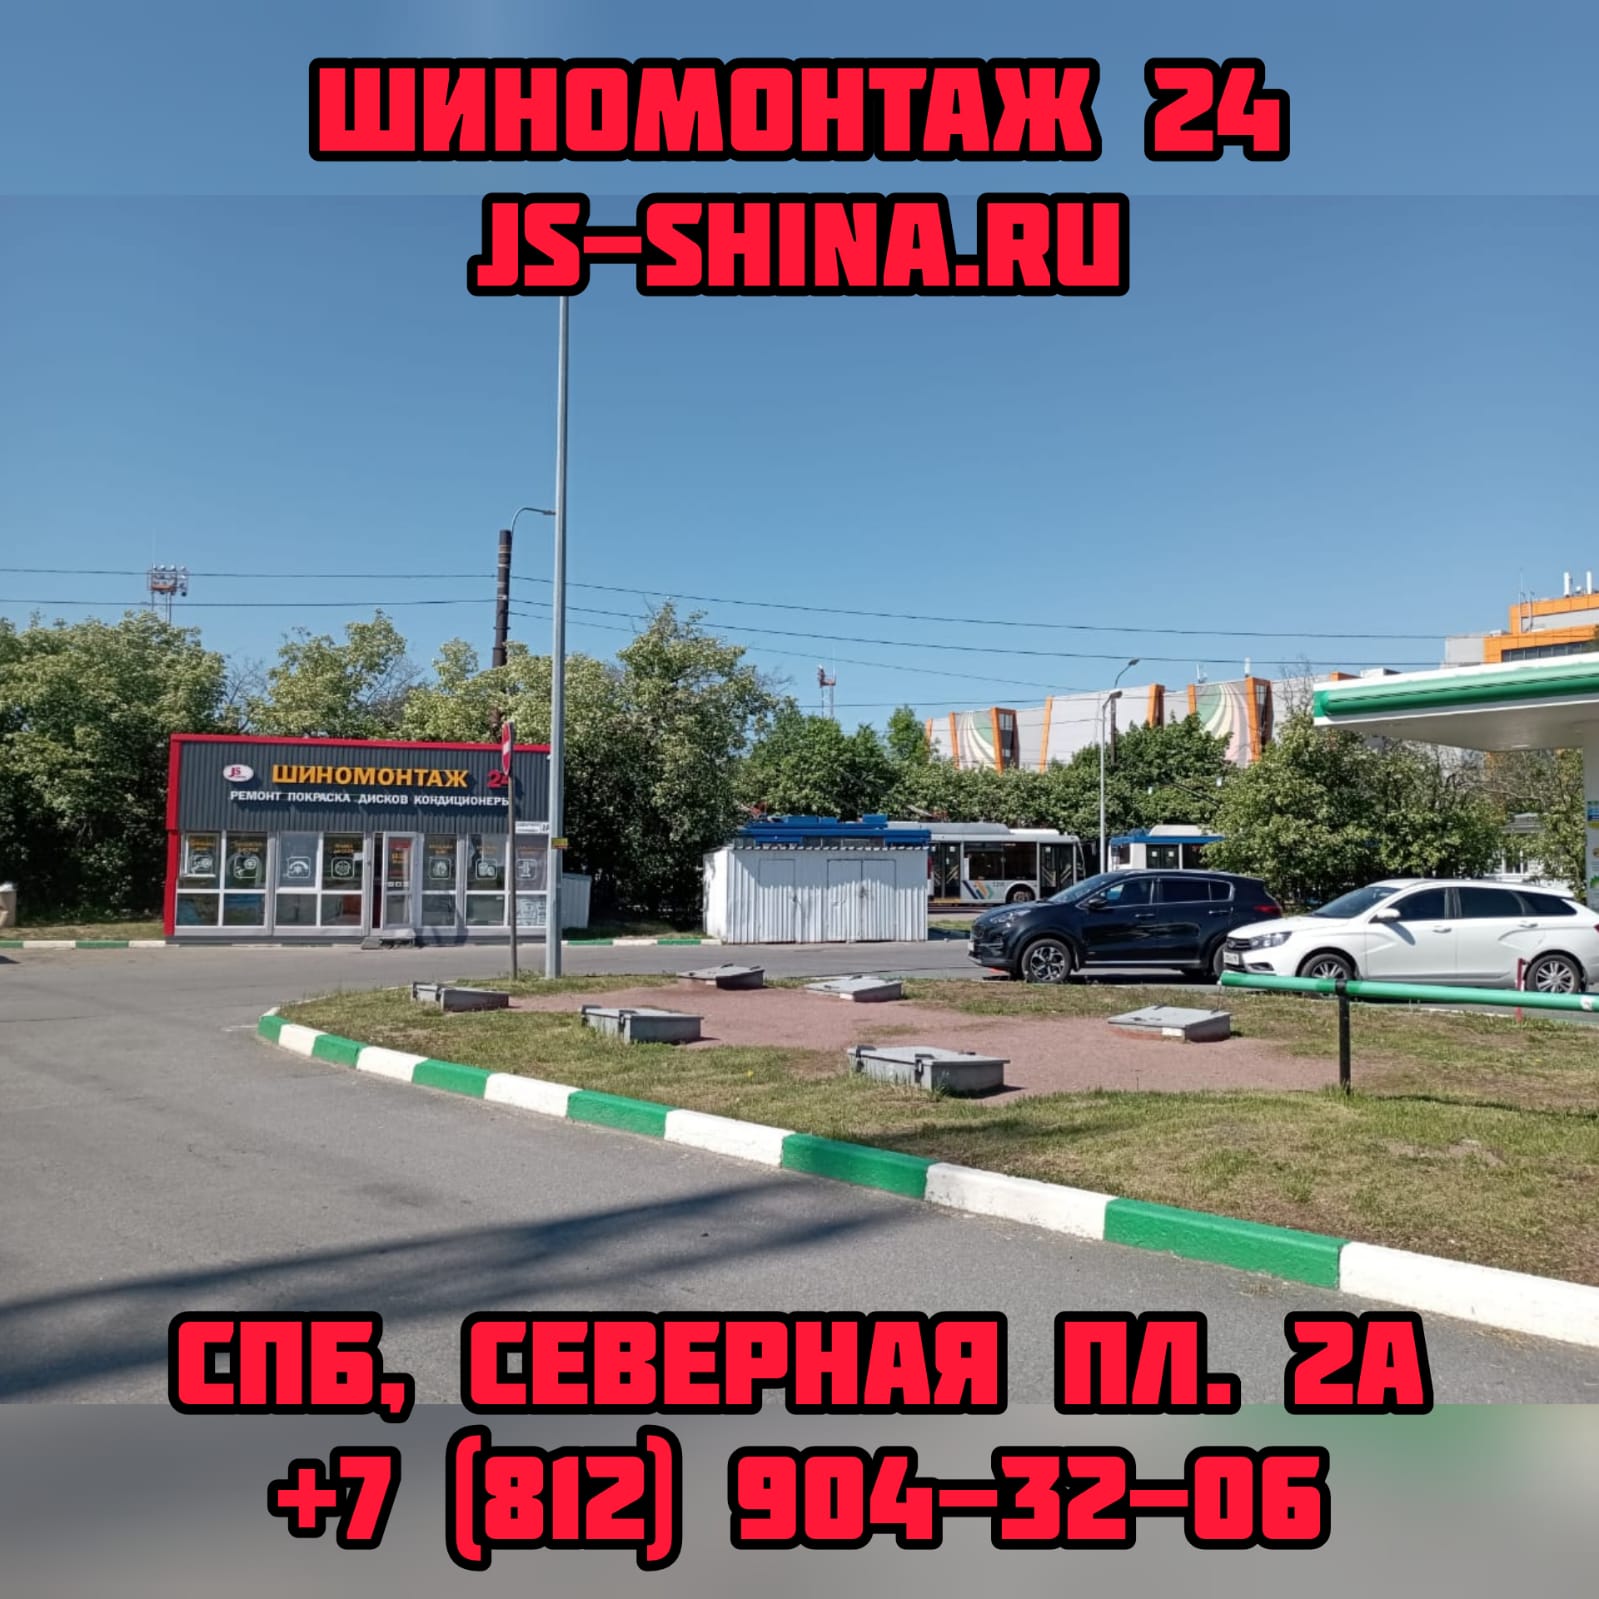 Шиномонтаж 24 часа в СПб Северная площадь 2А ремонт правка дисков